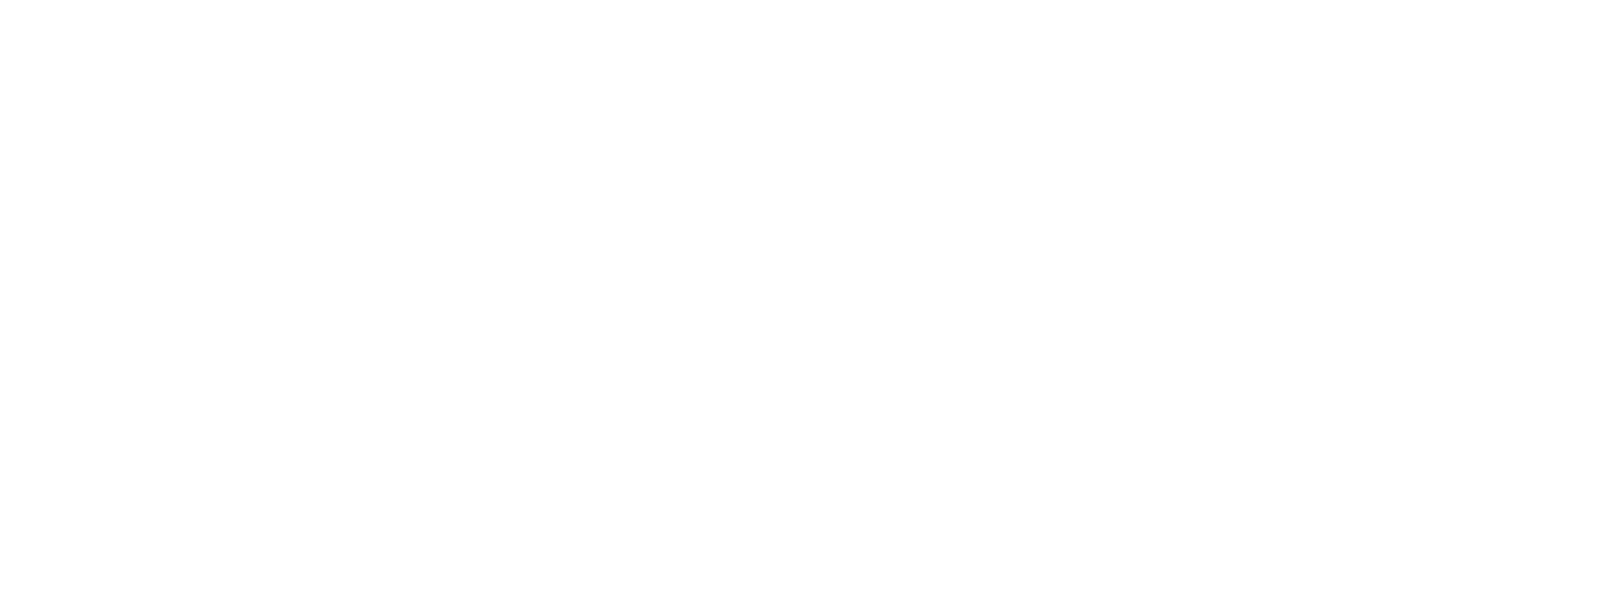 Neff Logo - Neff. Elegant Neff Associates Insurance Services With Neff. Elegant ...